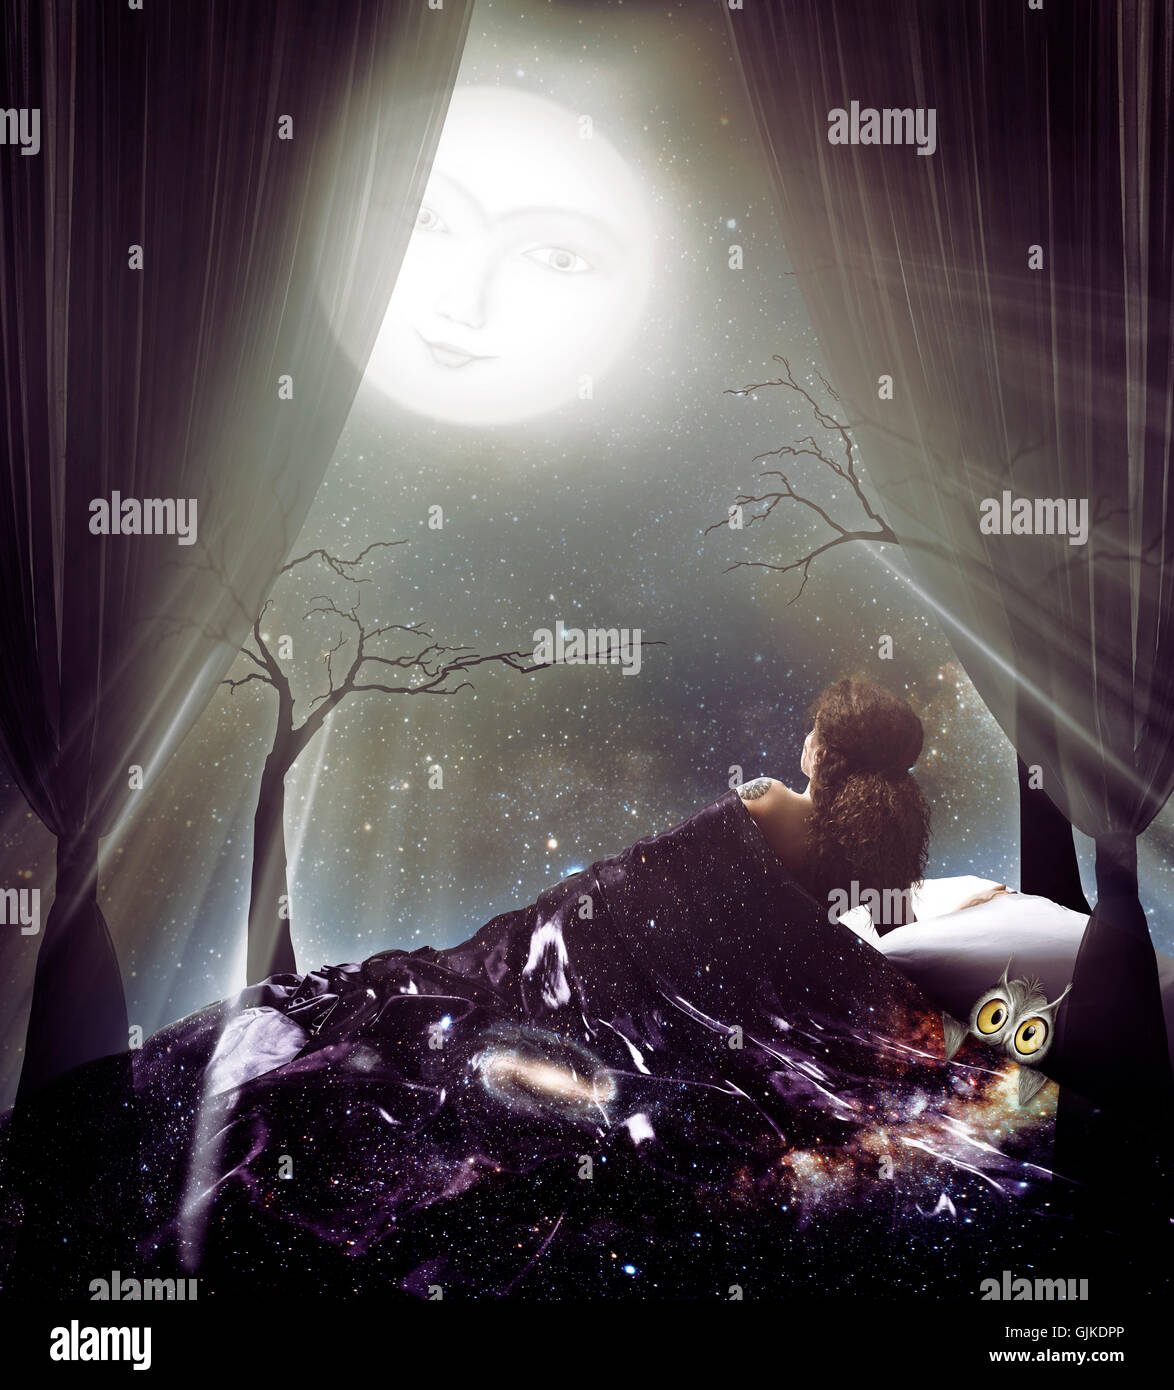 Beleuchtet von der Frau Mondschein unter dem Sternenhimmel-Decke mit einer Eule unter dem Vollmond künstlerischen spirituellen Foto-illustration Stockfoto